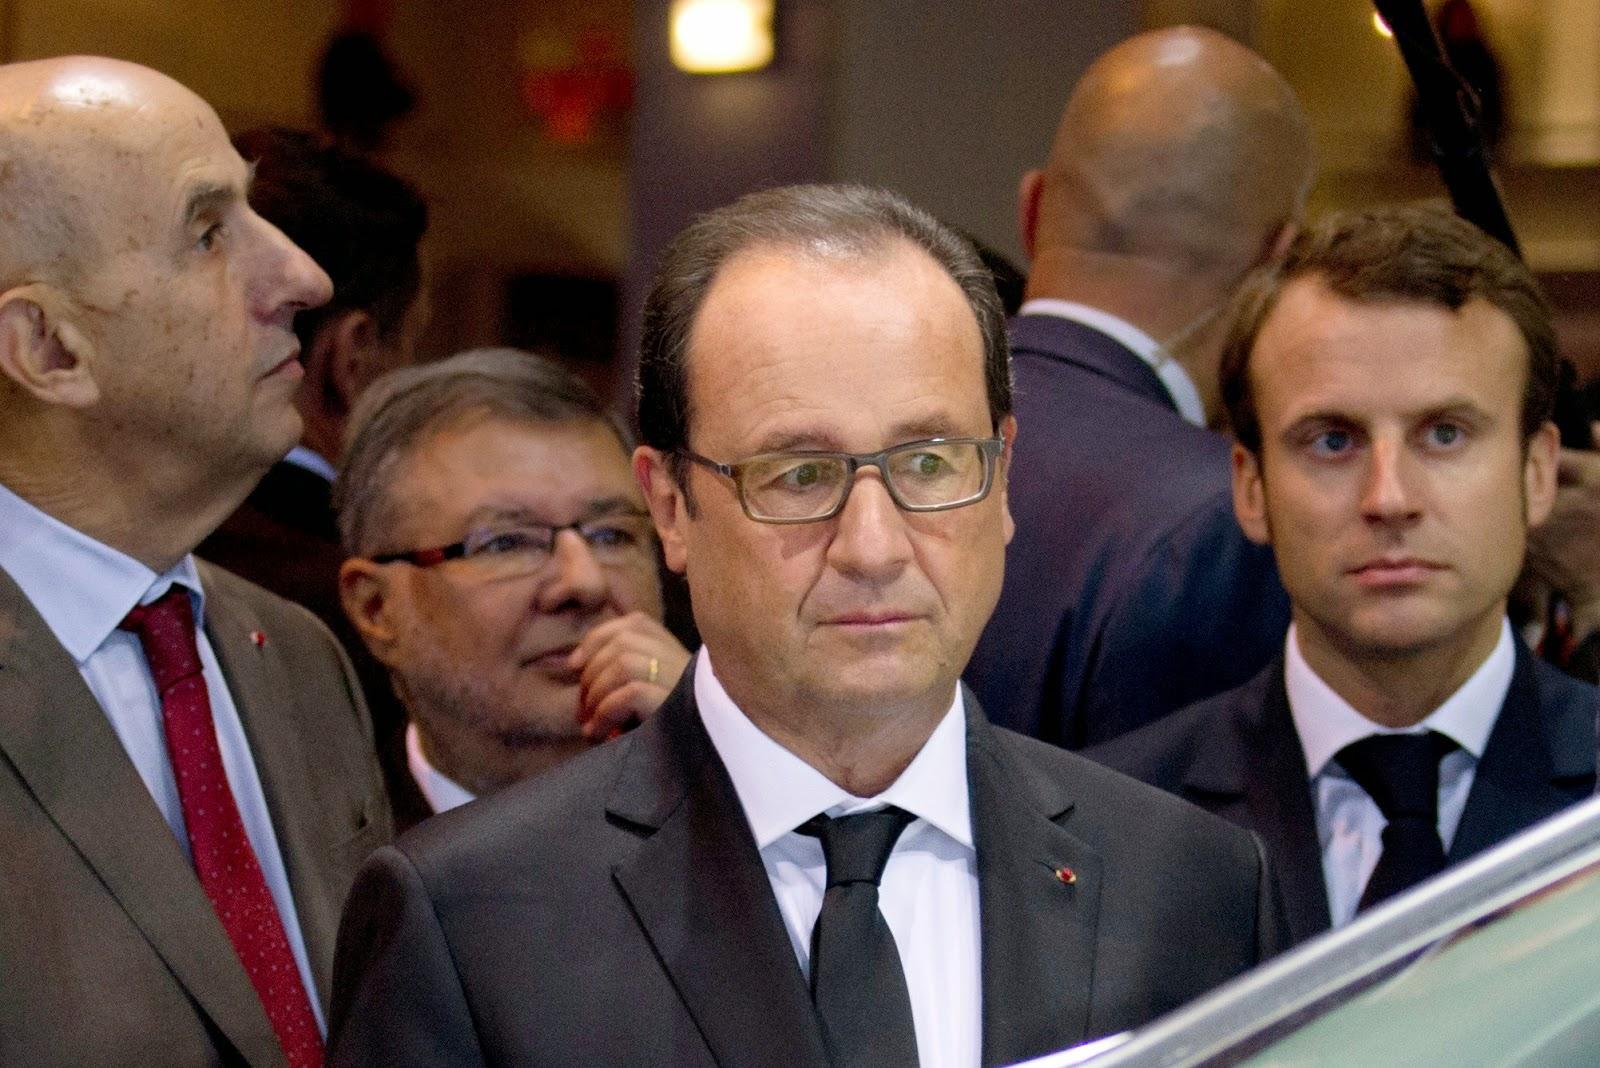 POLITIQUE > Les 3 péchés mortels du président Hollande